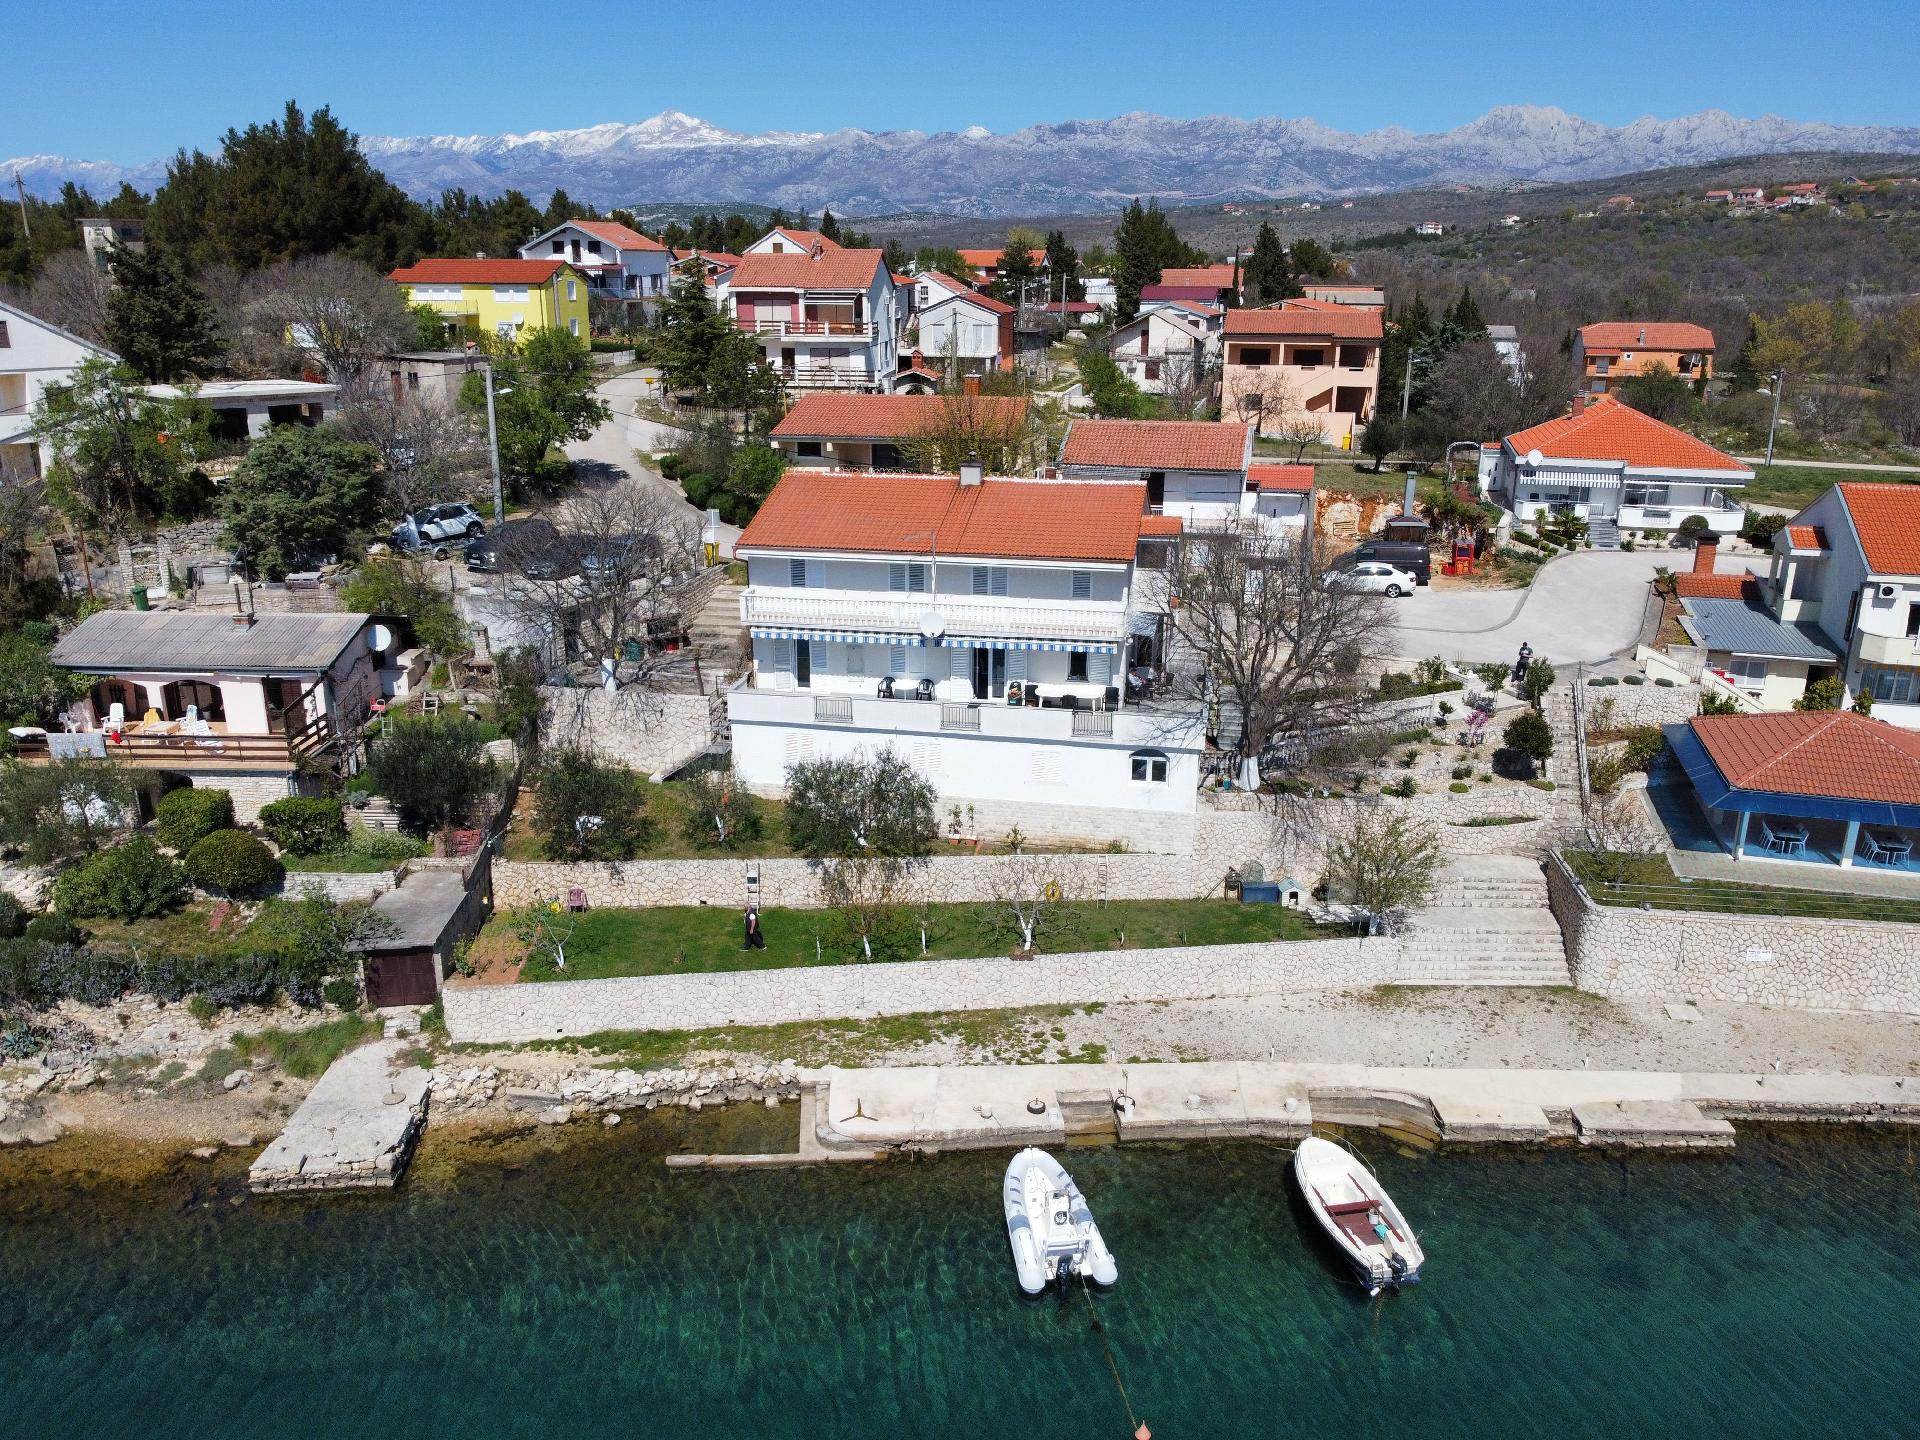 Ferienwohnung für 8 Personen ca. 120 m²  Ferienhaus in Kroatien